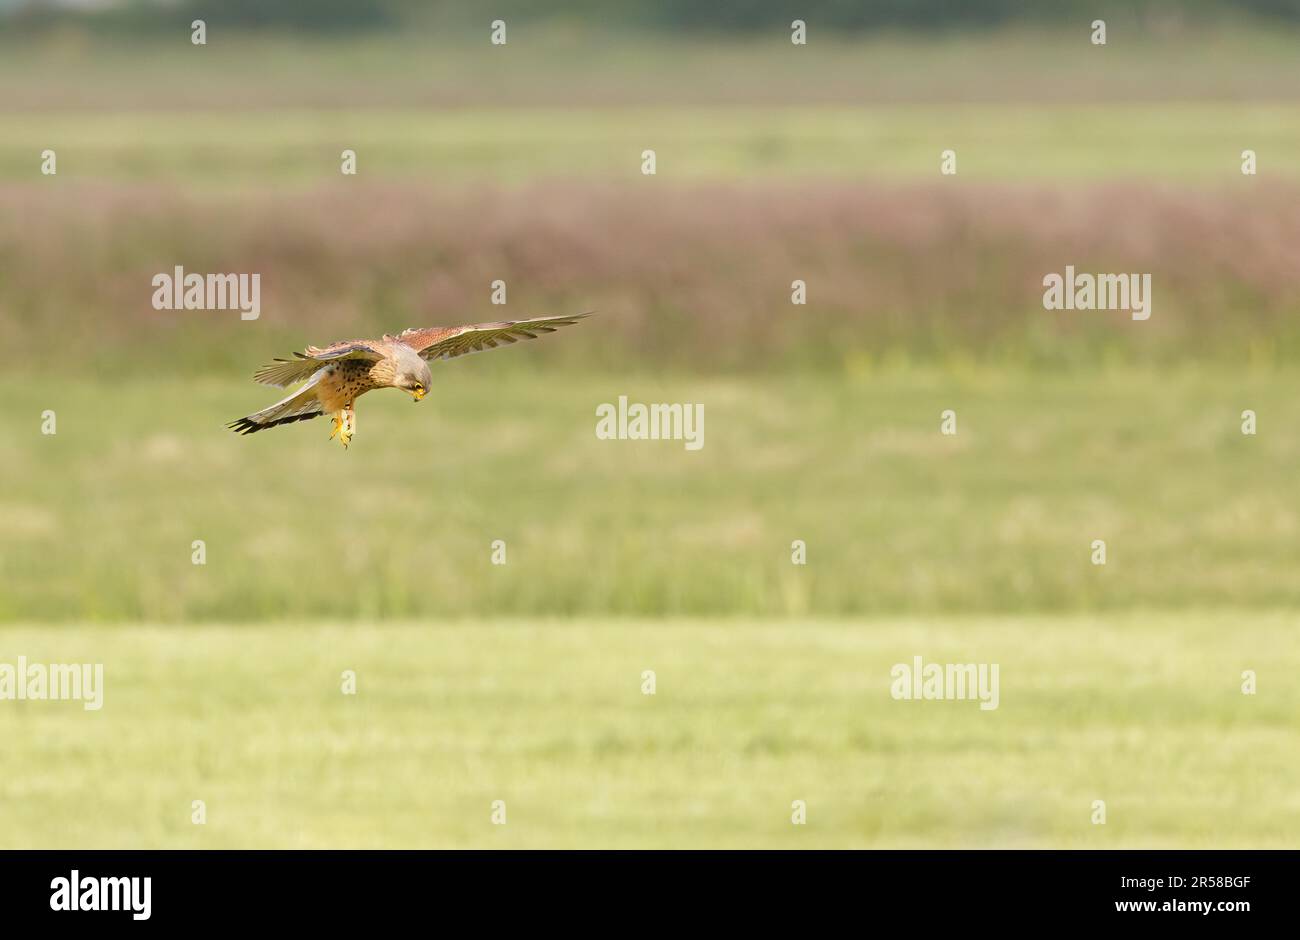 Nahaufnahme eines aufragenden und jagenden Kestrel, Falco tinnunculus, in einem natürlichen Lebensraum offener Felder vor einer grünen Wiesenlandschaft im Hintergrund Stockfoto